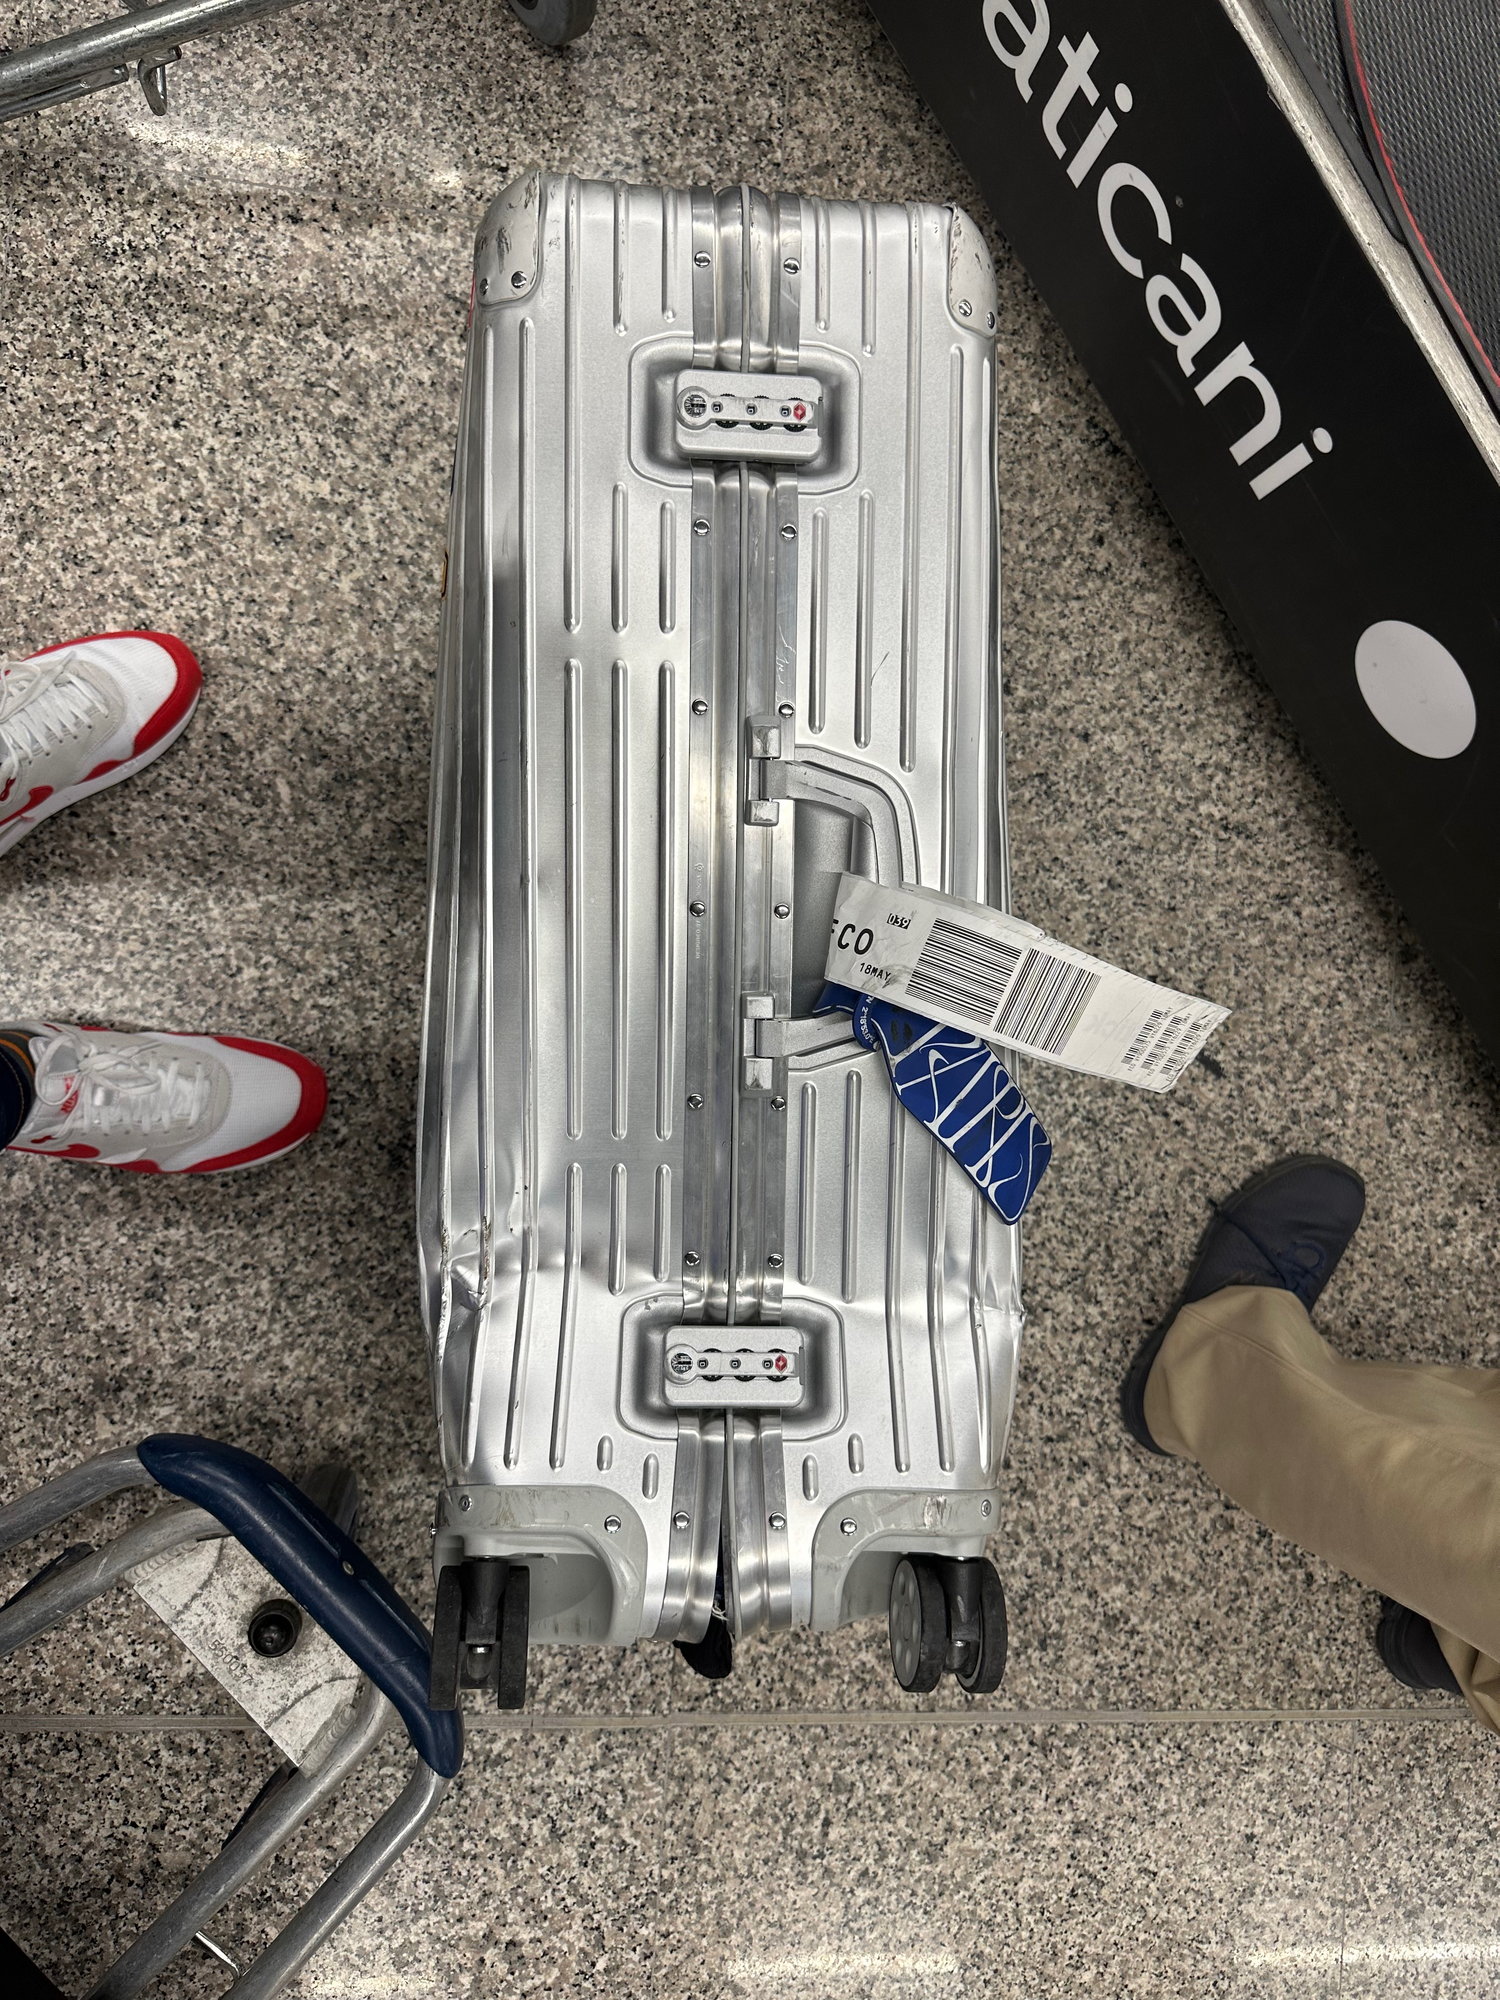 damaged rimowa luggage